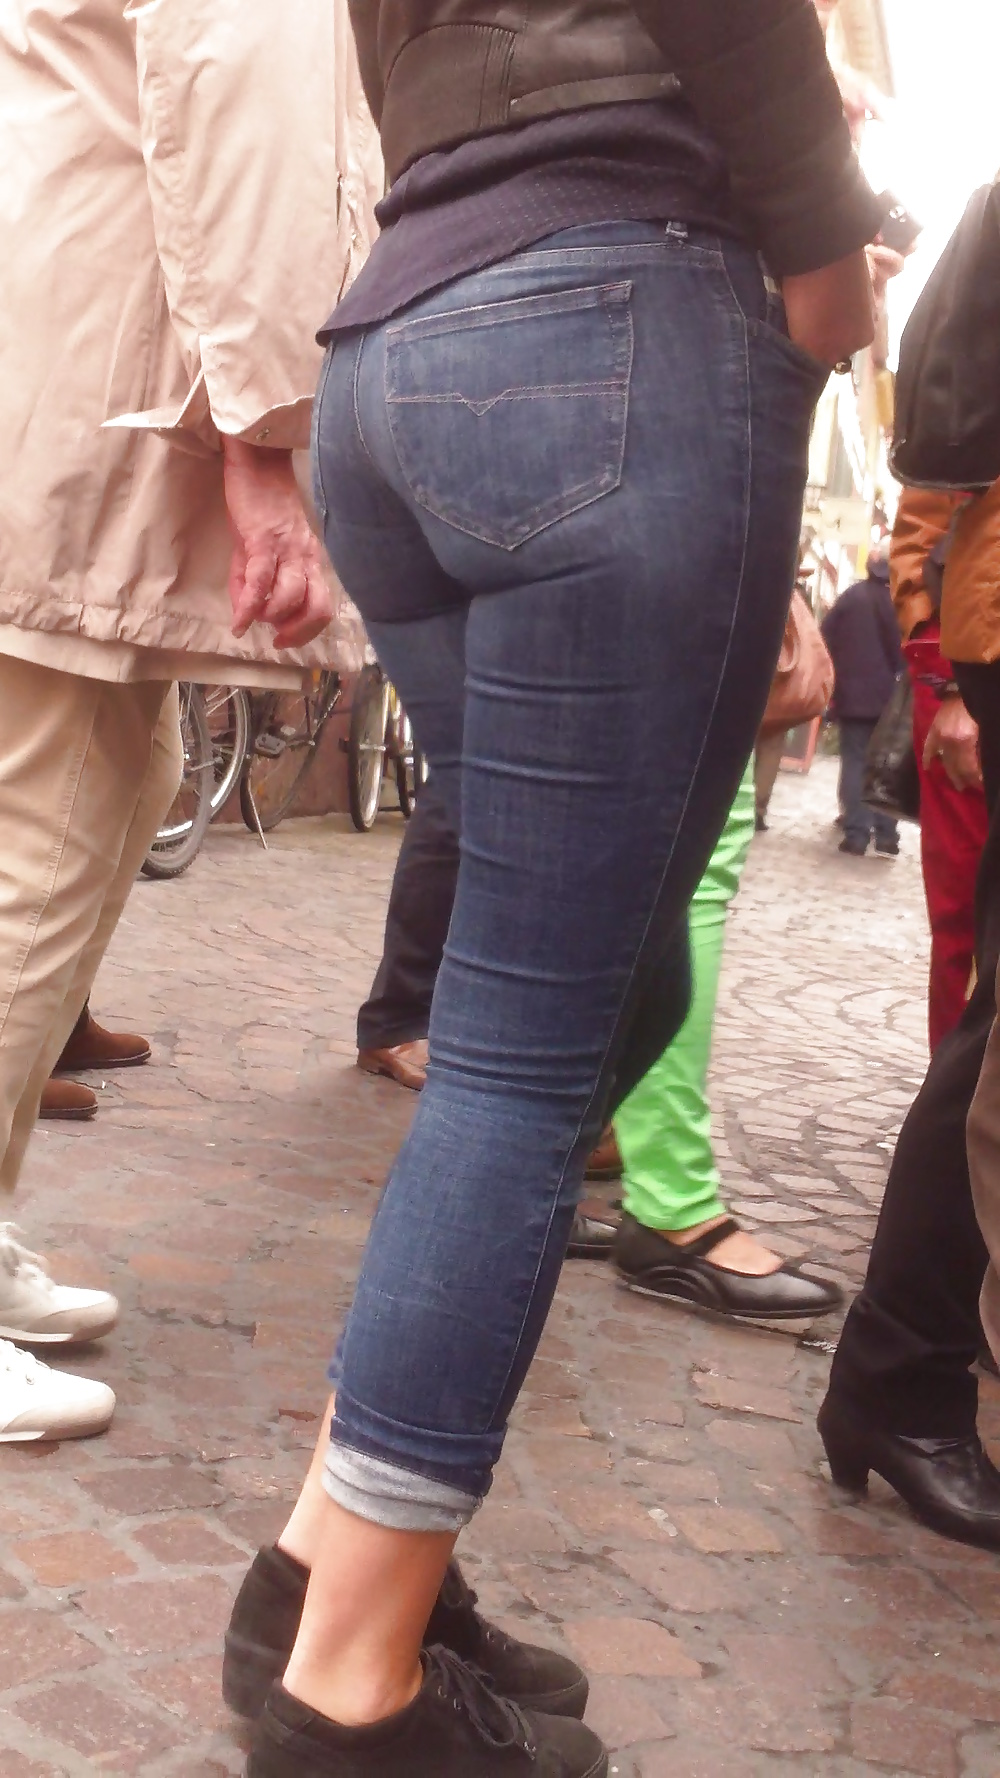 Popular teen girls ass & butt in jeans Part 6 #32010439